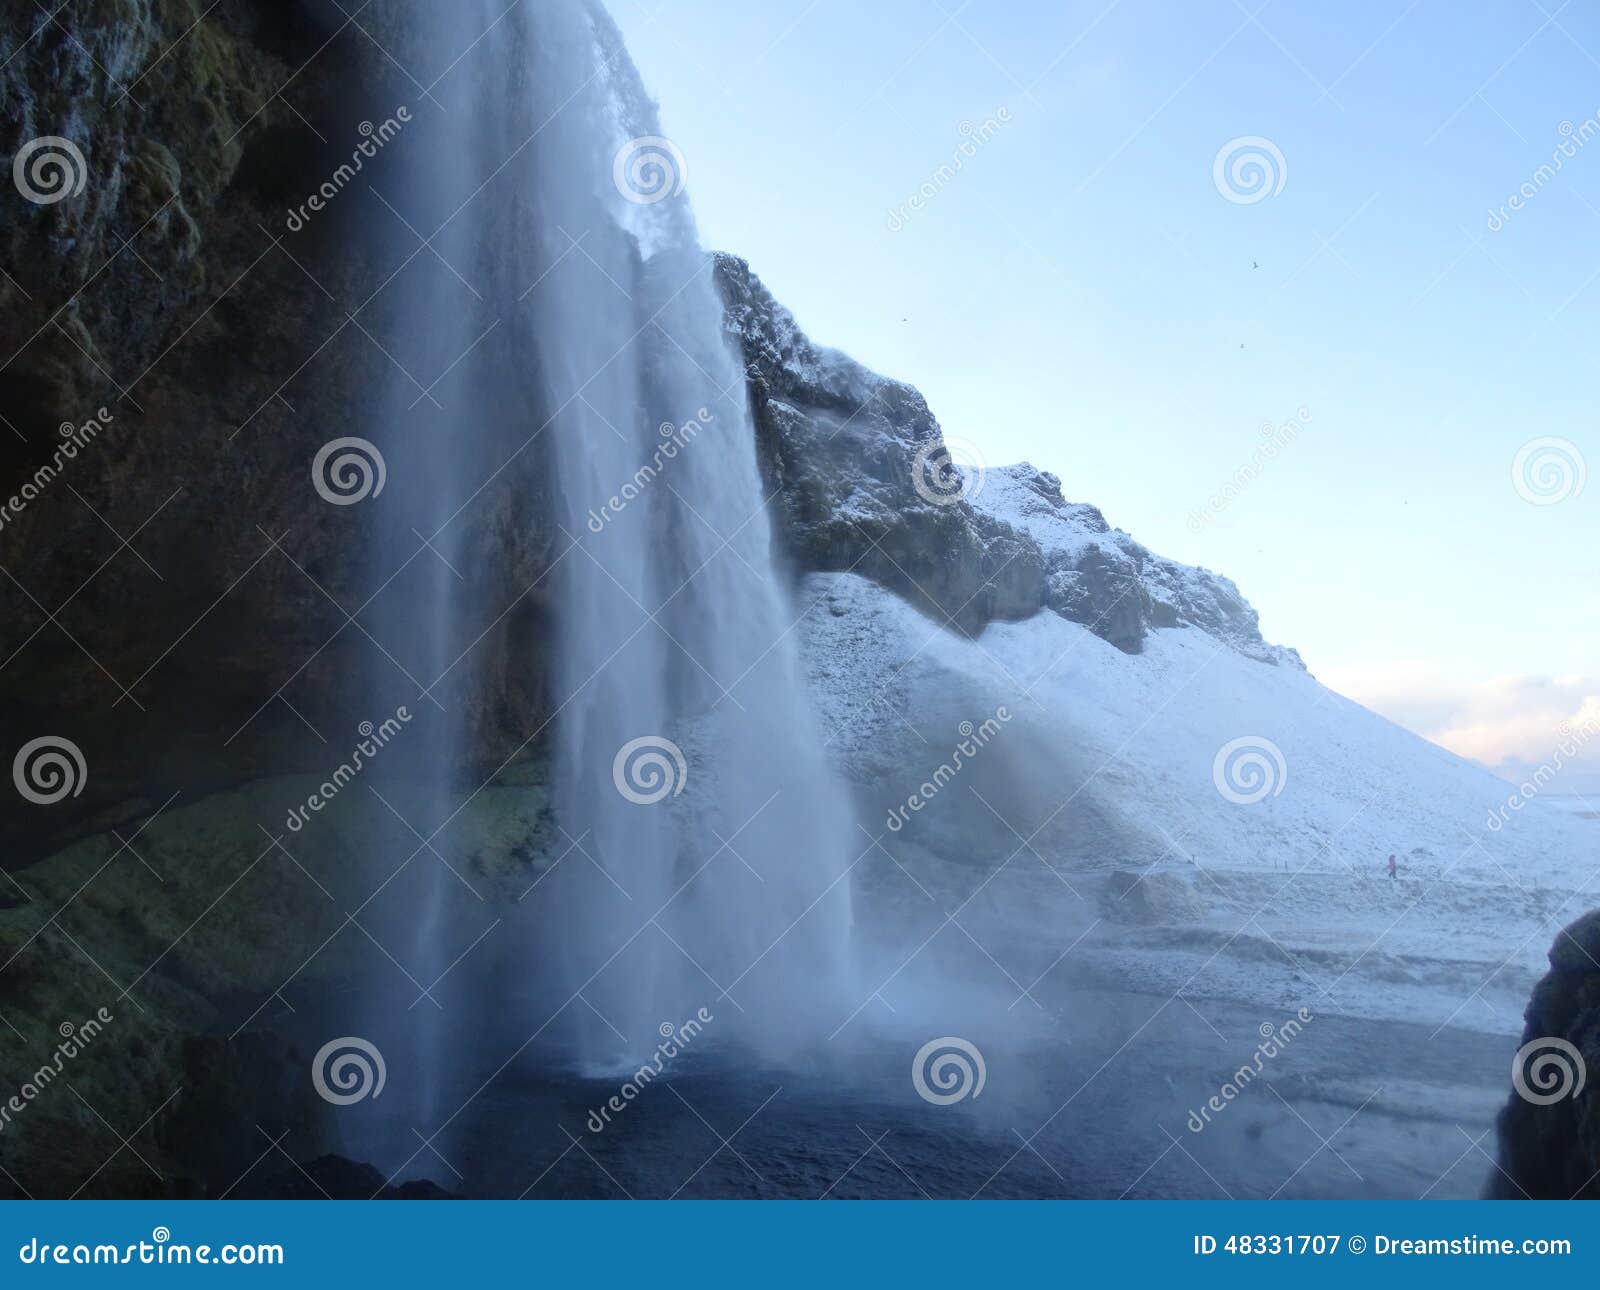 seljalandsfoss waterfall, iceland